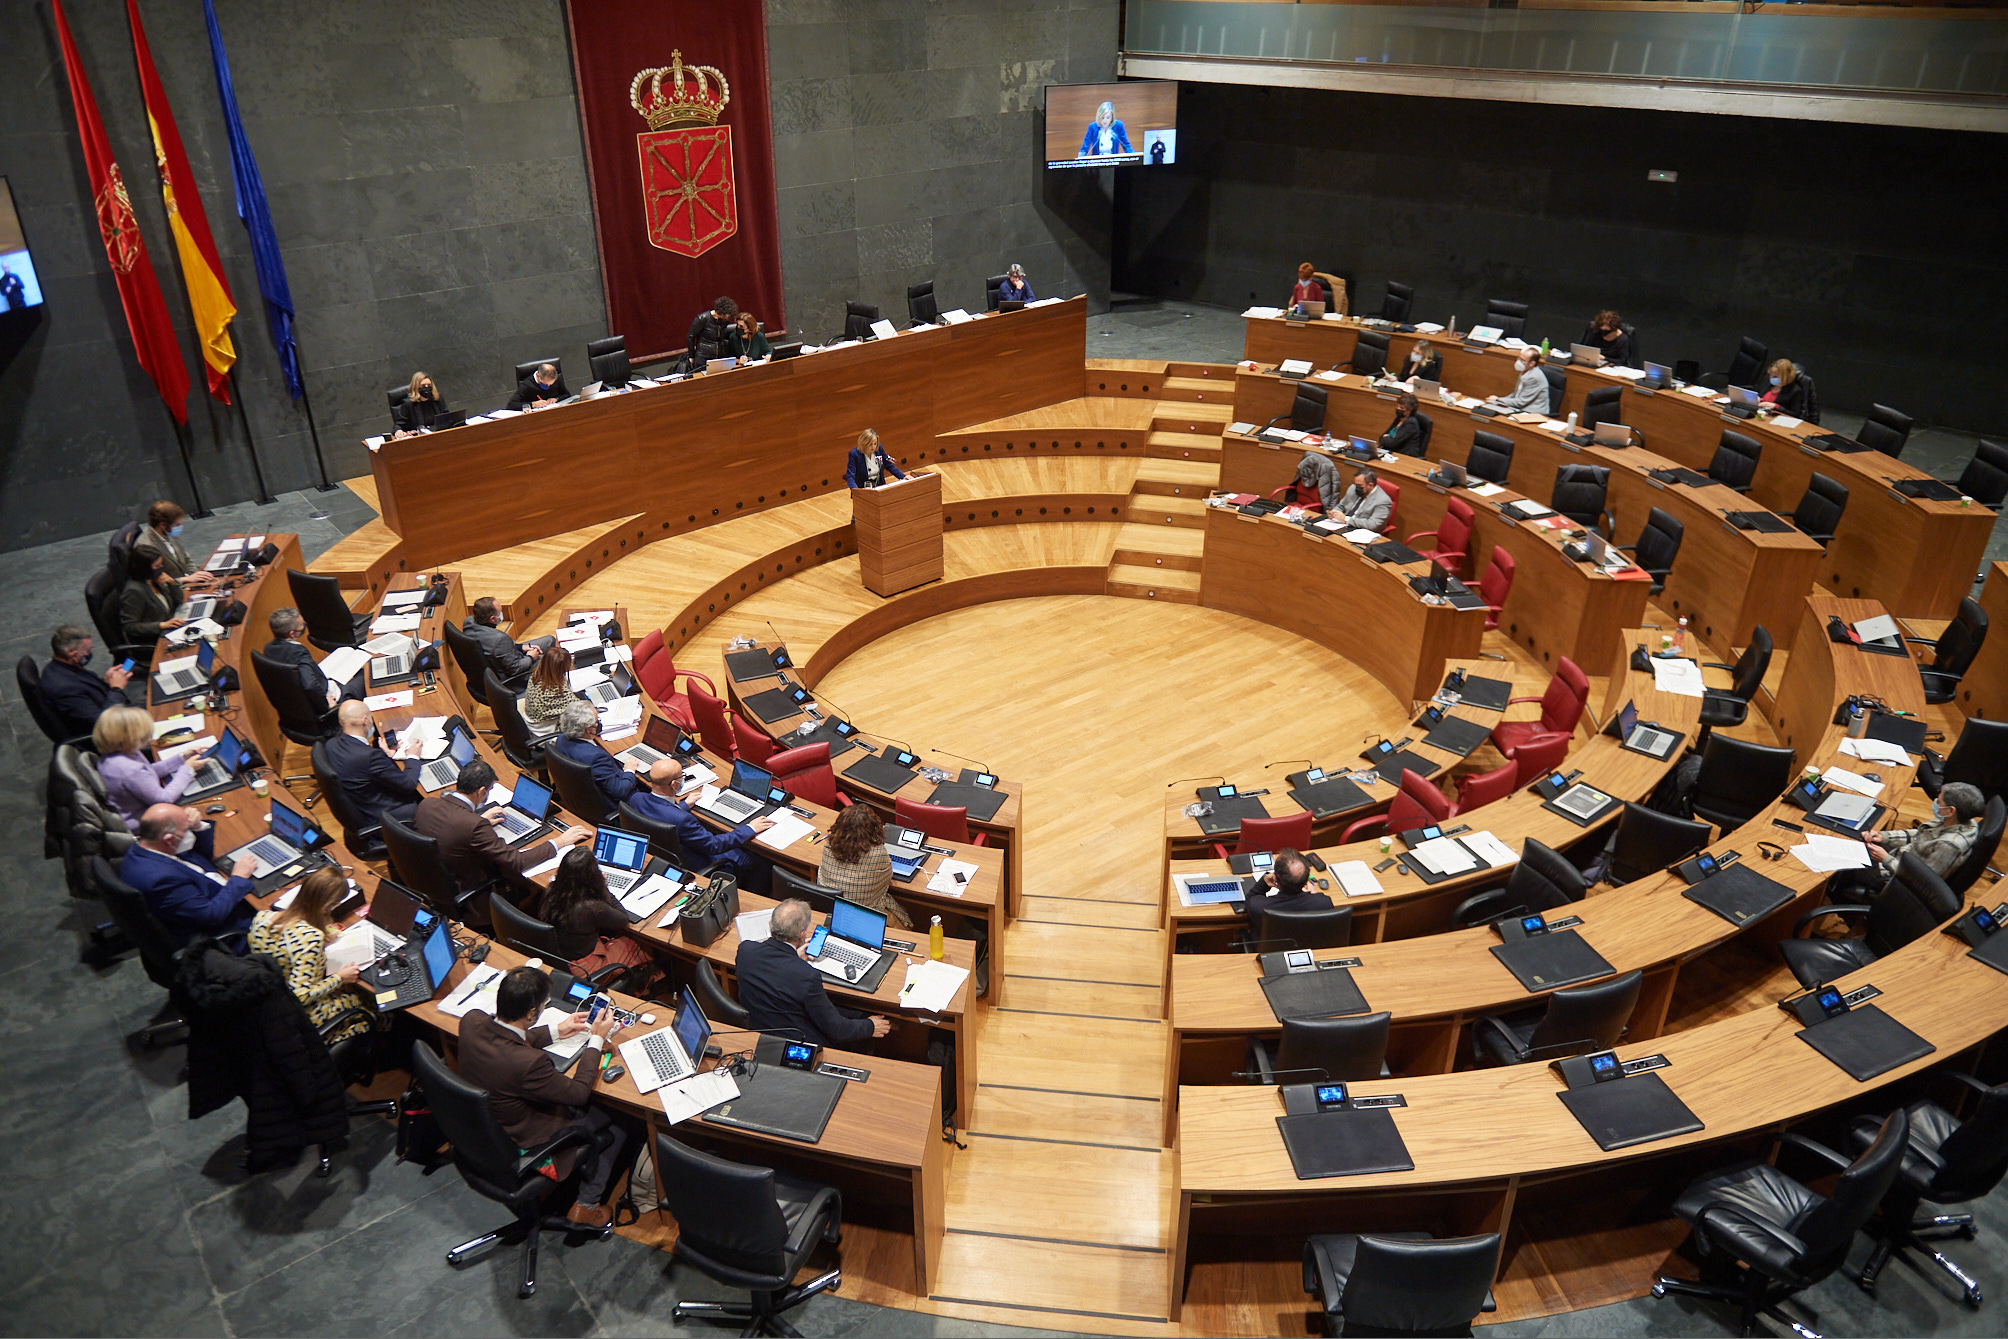 Imagen del salón de Plenos del Parlamento de Navarra durante la sesión